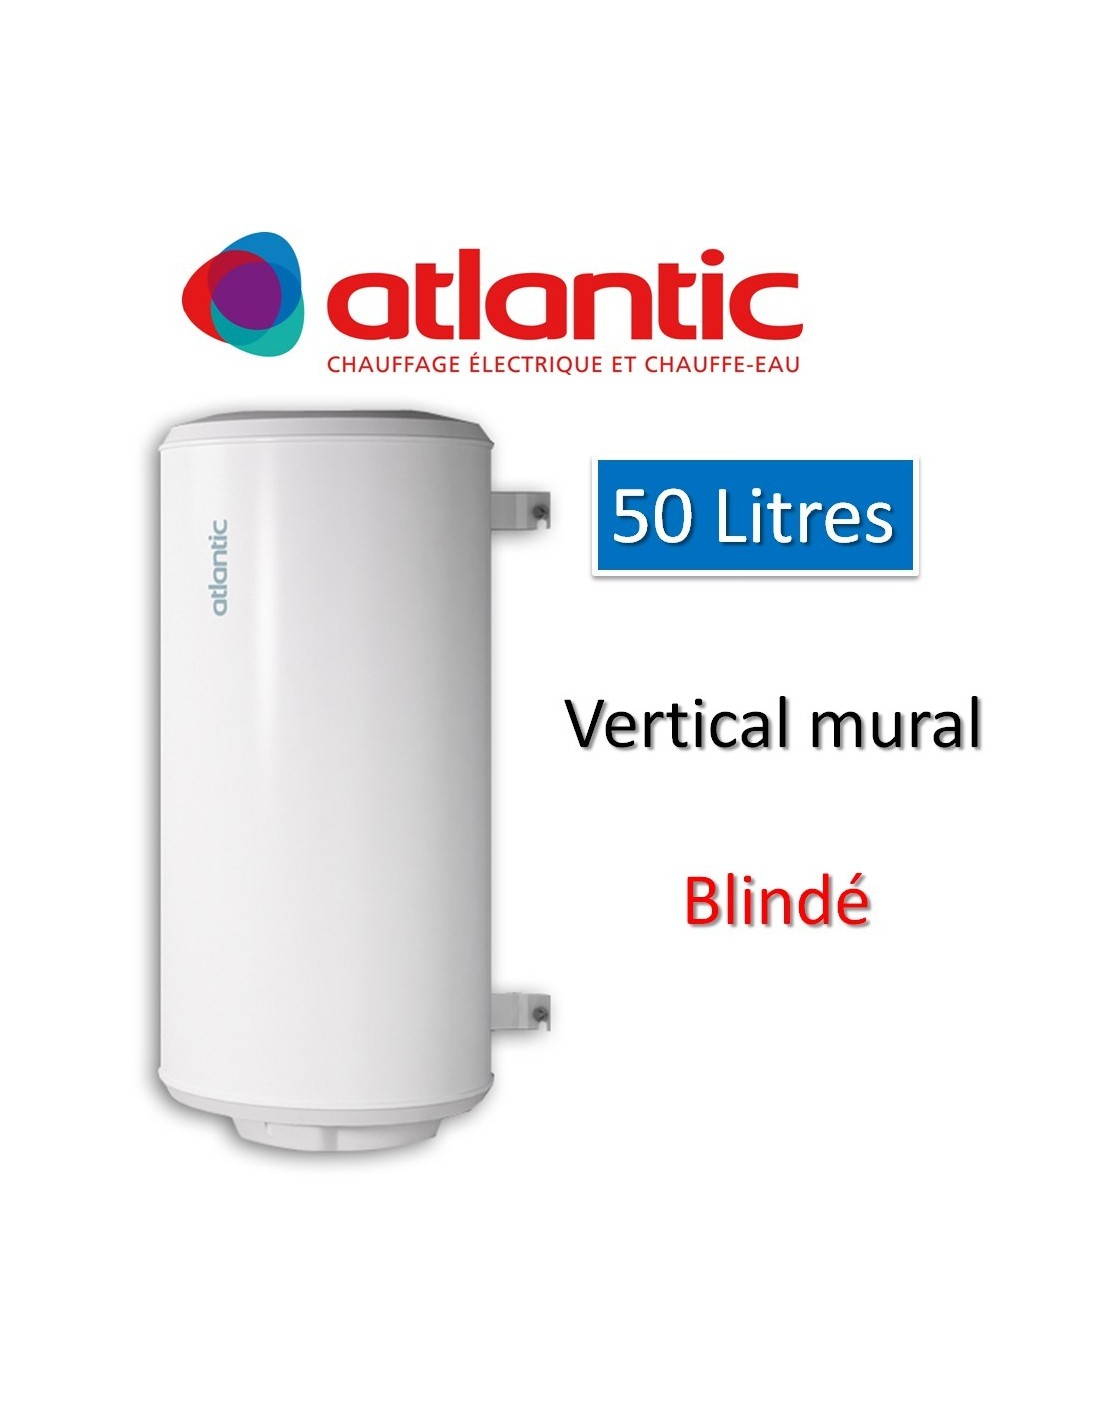 Chauffe-eau chauffeo 50l electrique vertical blindé atlantic-Chauffe-eau  atlantic 50 litres